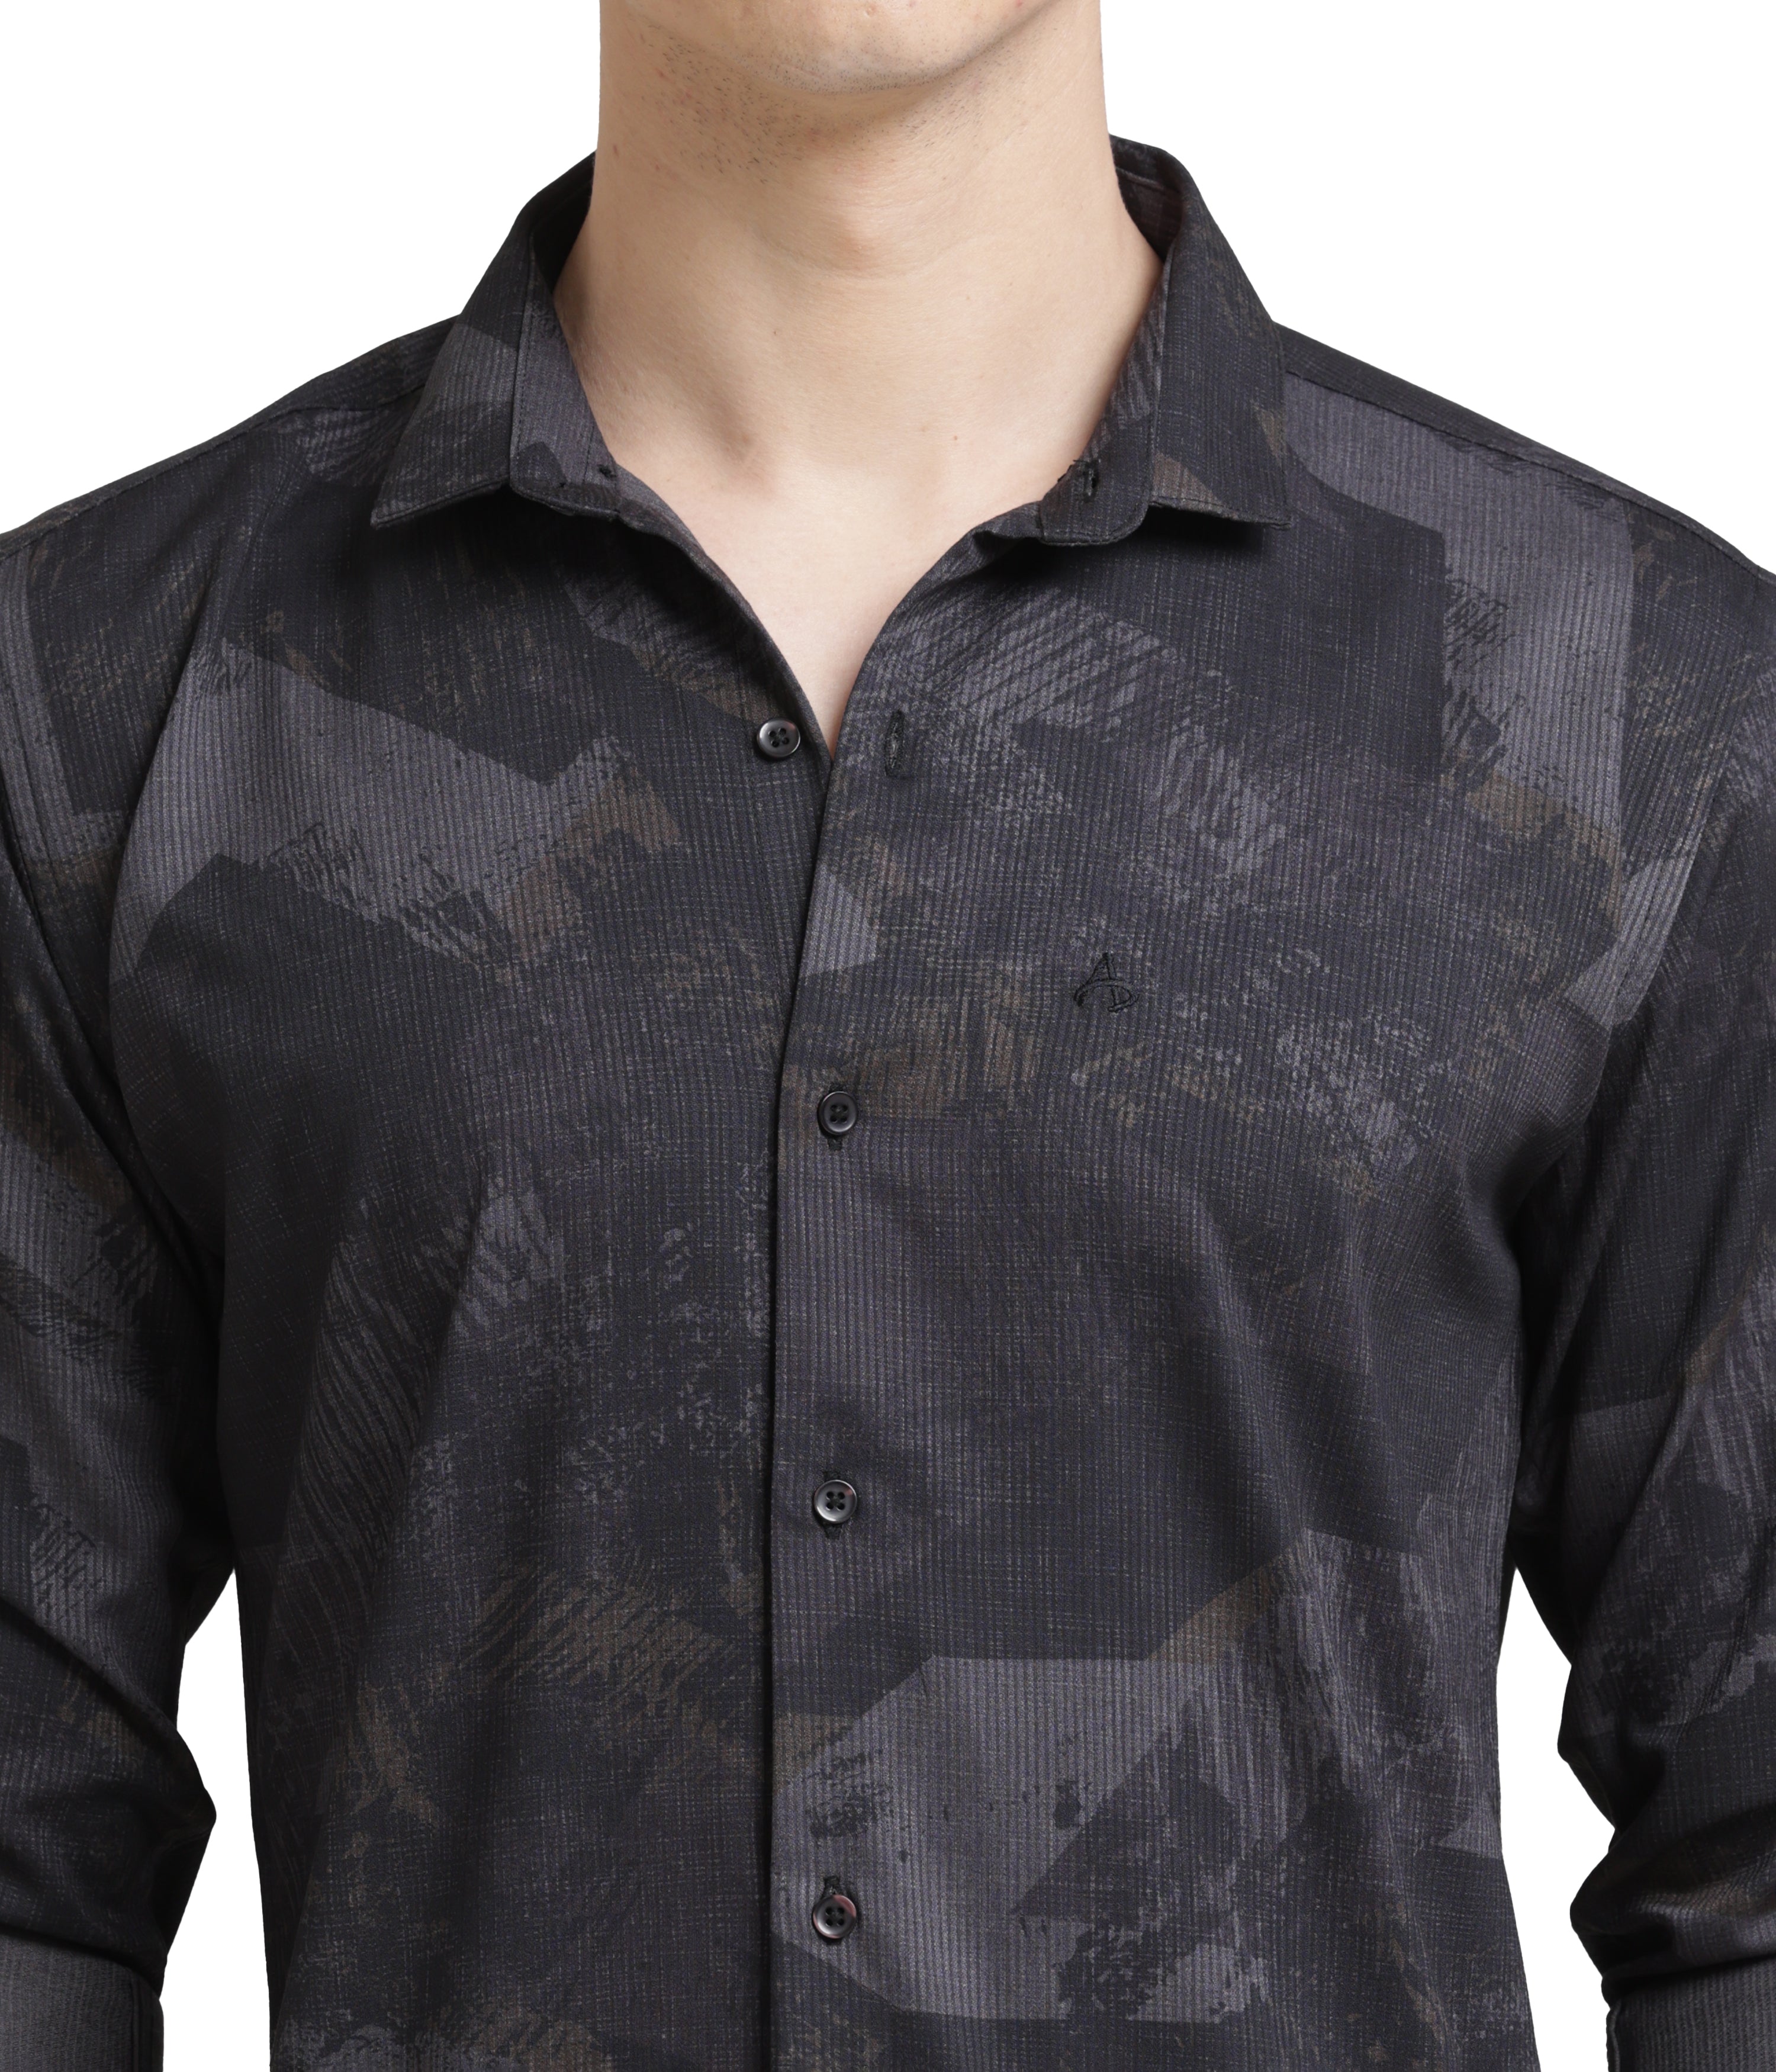 Black Classic Fit Shirt: Versatile Style